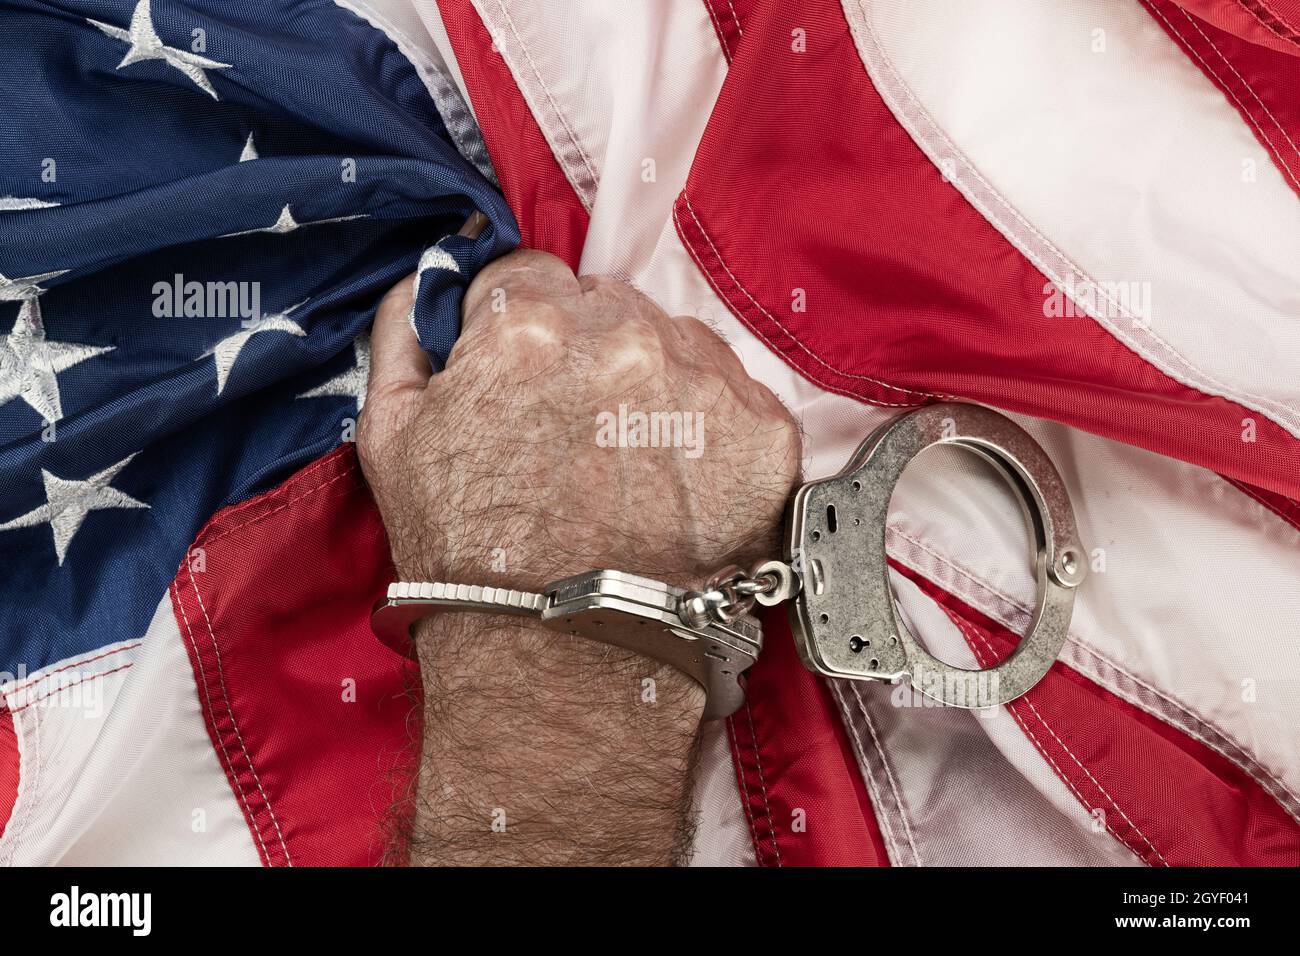 Un homme aux menottes saisit le drapeau américain dans la frustration et la colère alors que l'oppression et la bureaucratie empêchent sa liberté. Banque D'Images